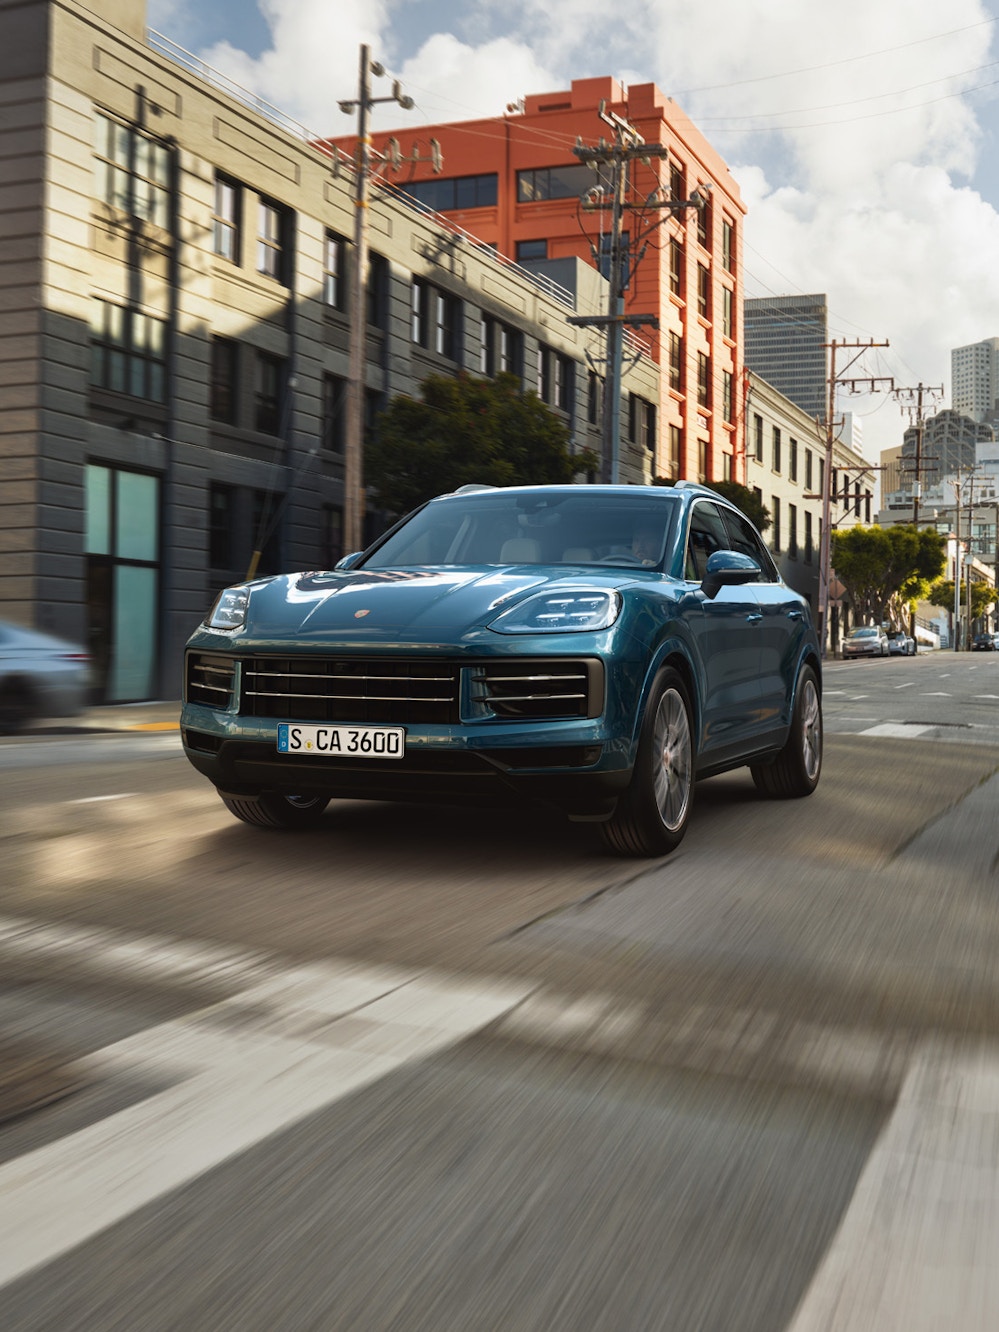 A blue metallic Porsche Cayenne driving on a urban street.